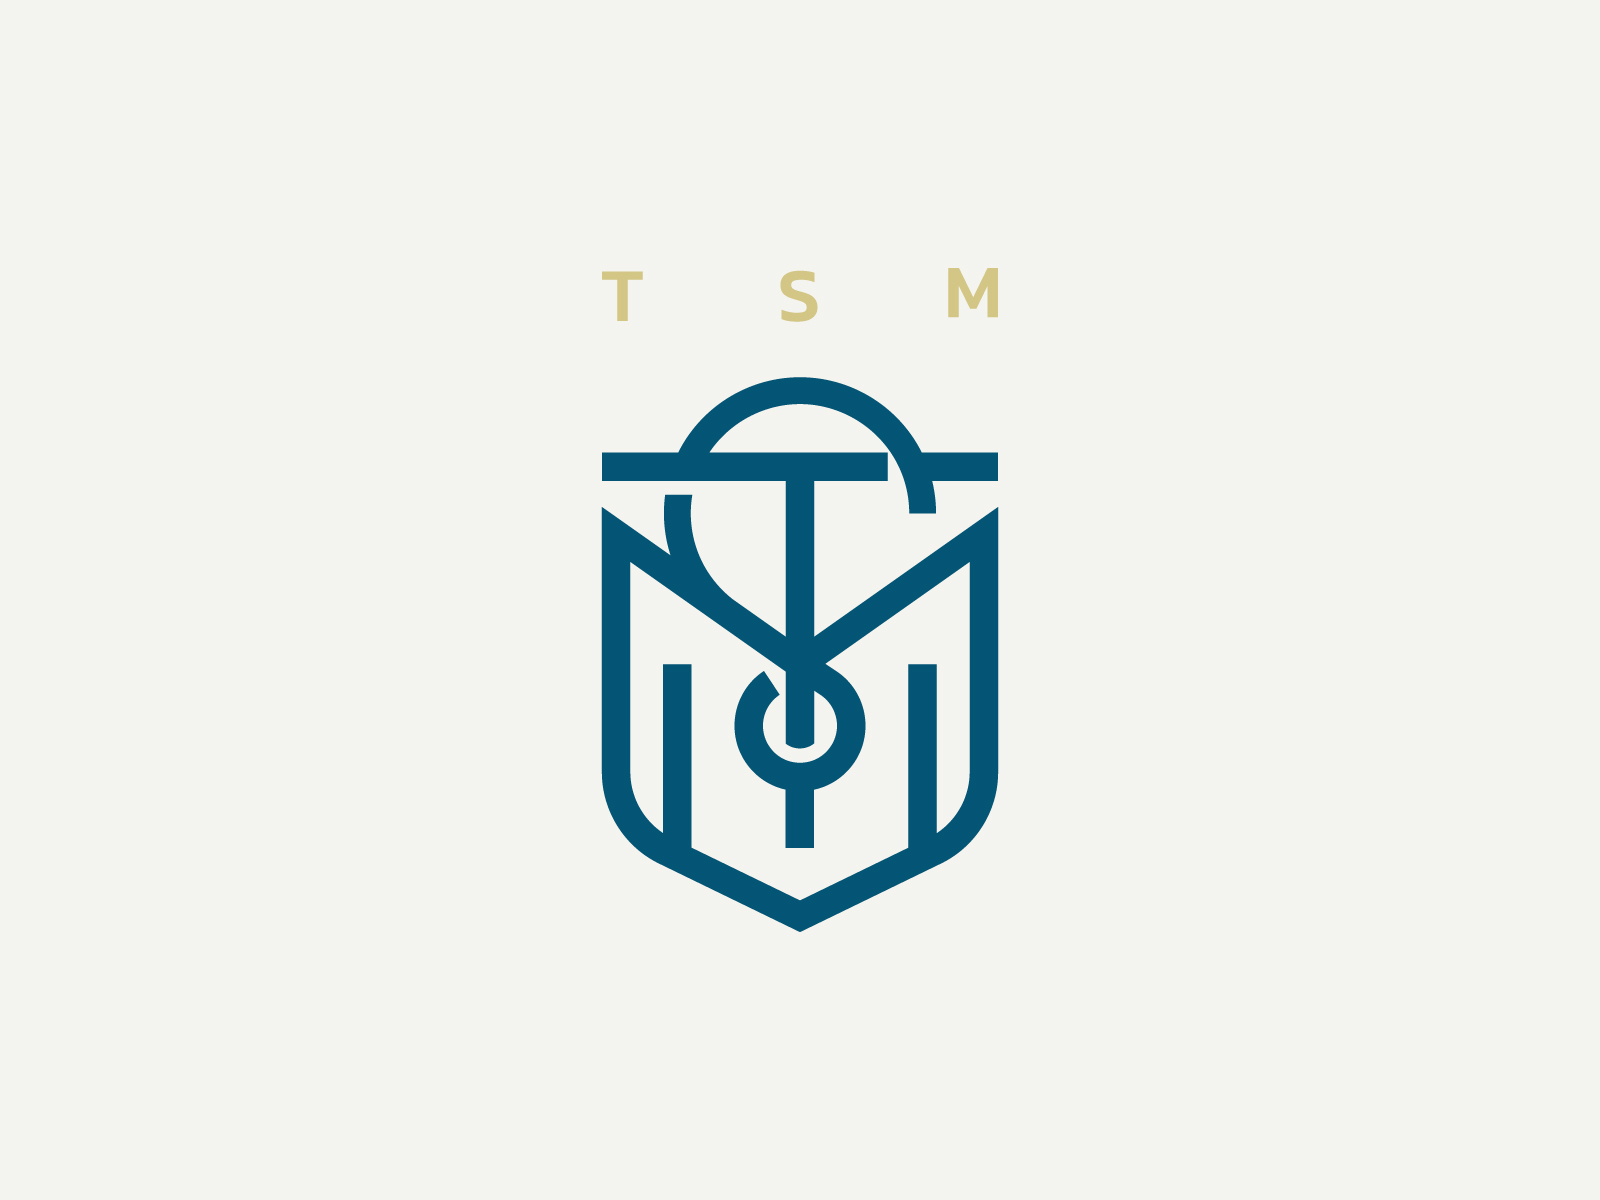 Tsm Logo Wallpaper | 2560x1440 | ID:55948 - WallpaperVortex.com